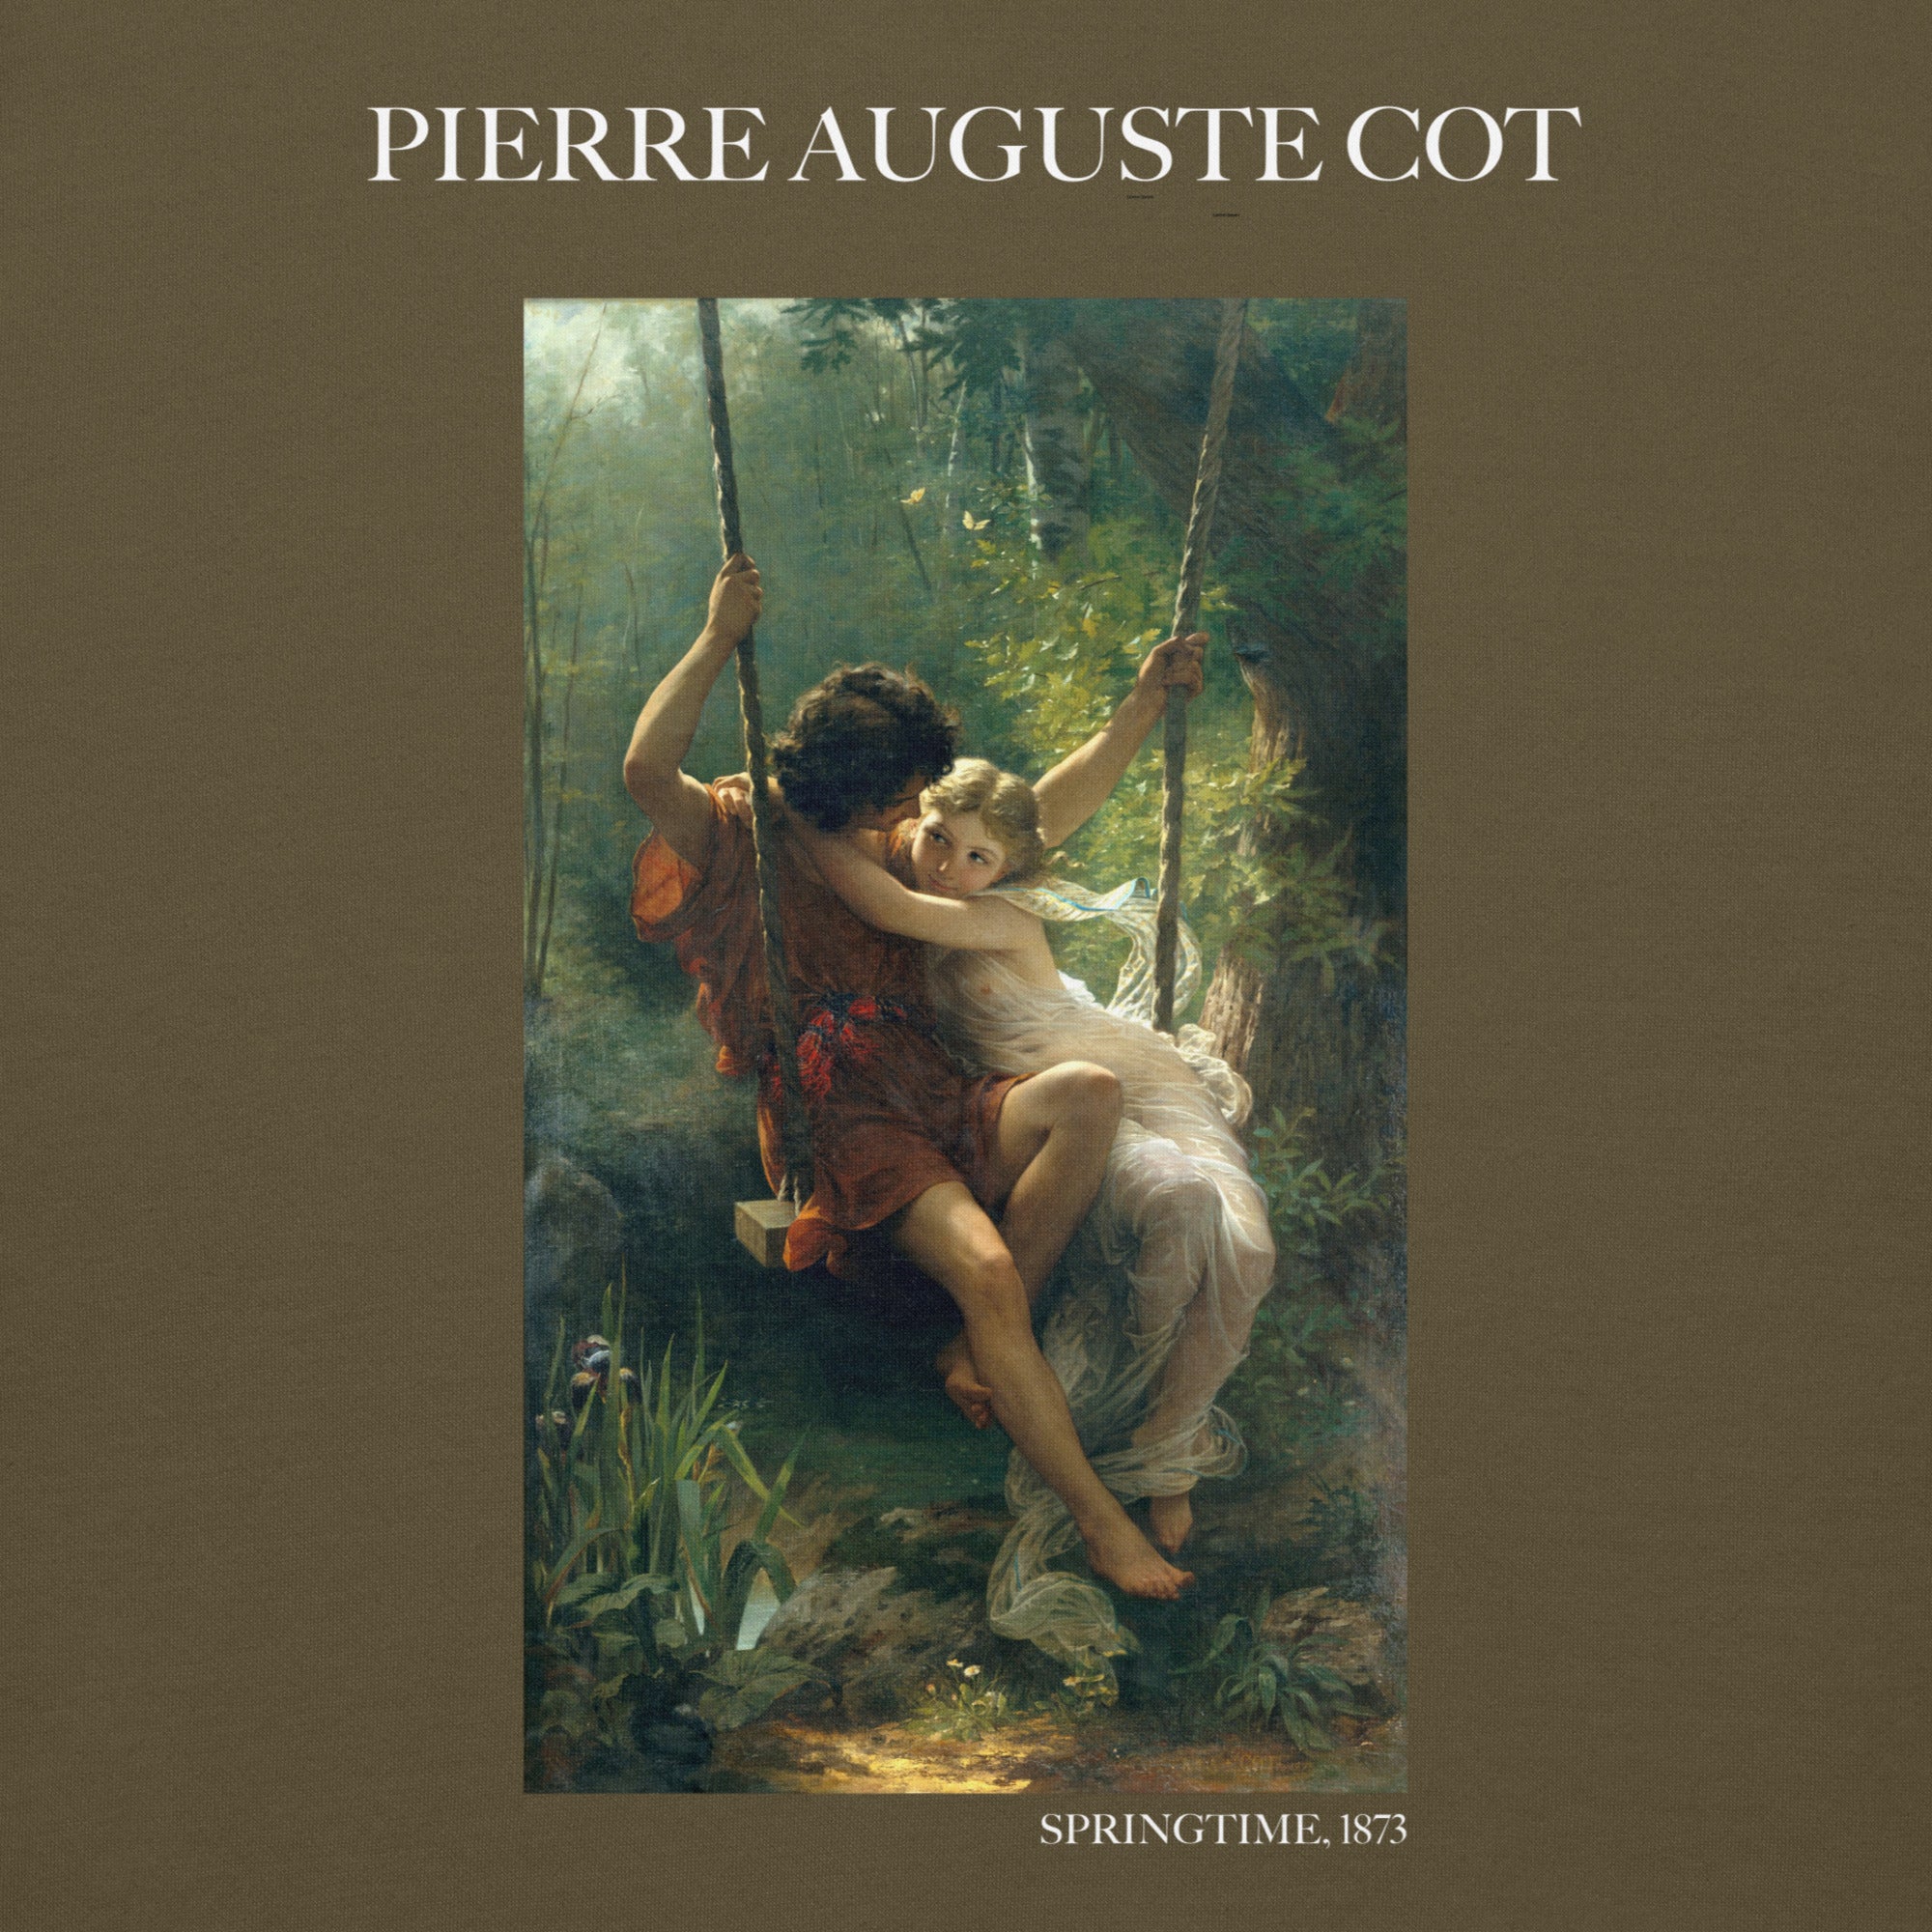 Pierre Auguste Cot 'Springtime' Famous Painting Hoodie | Unisex Premium Art Hoodie